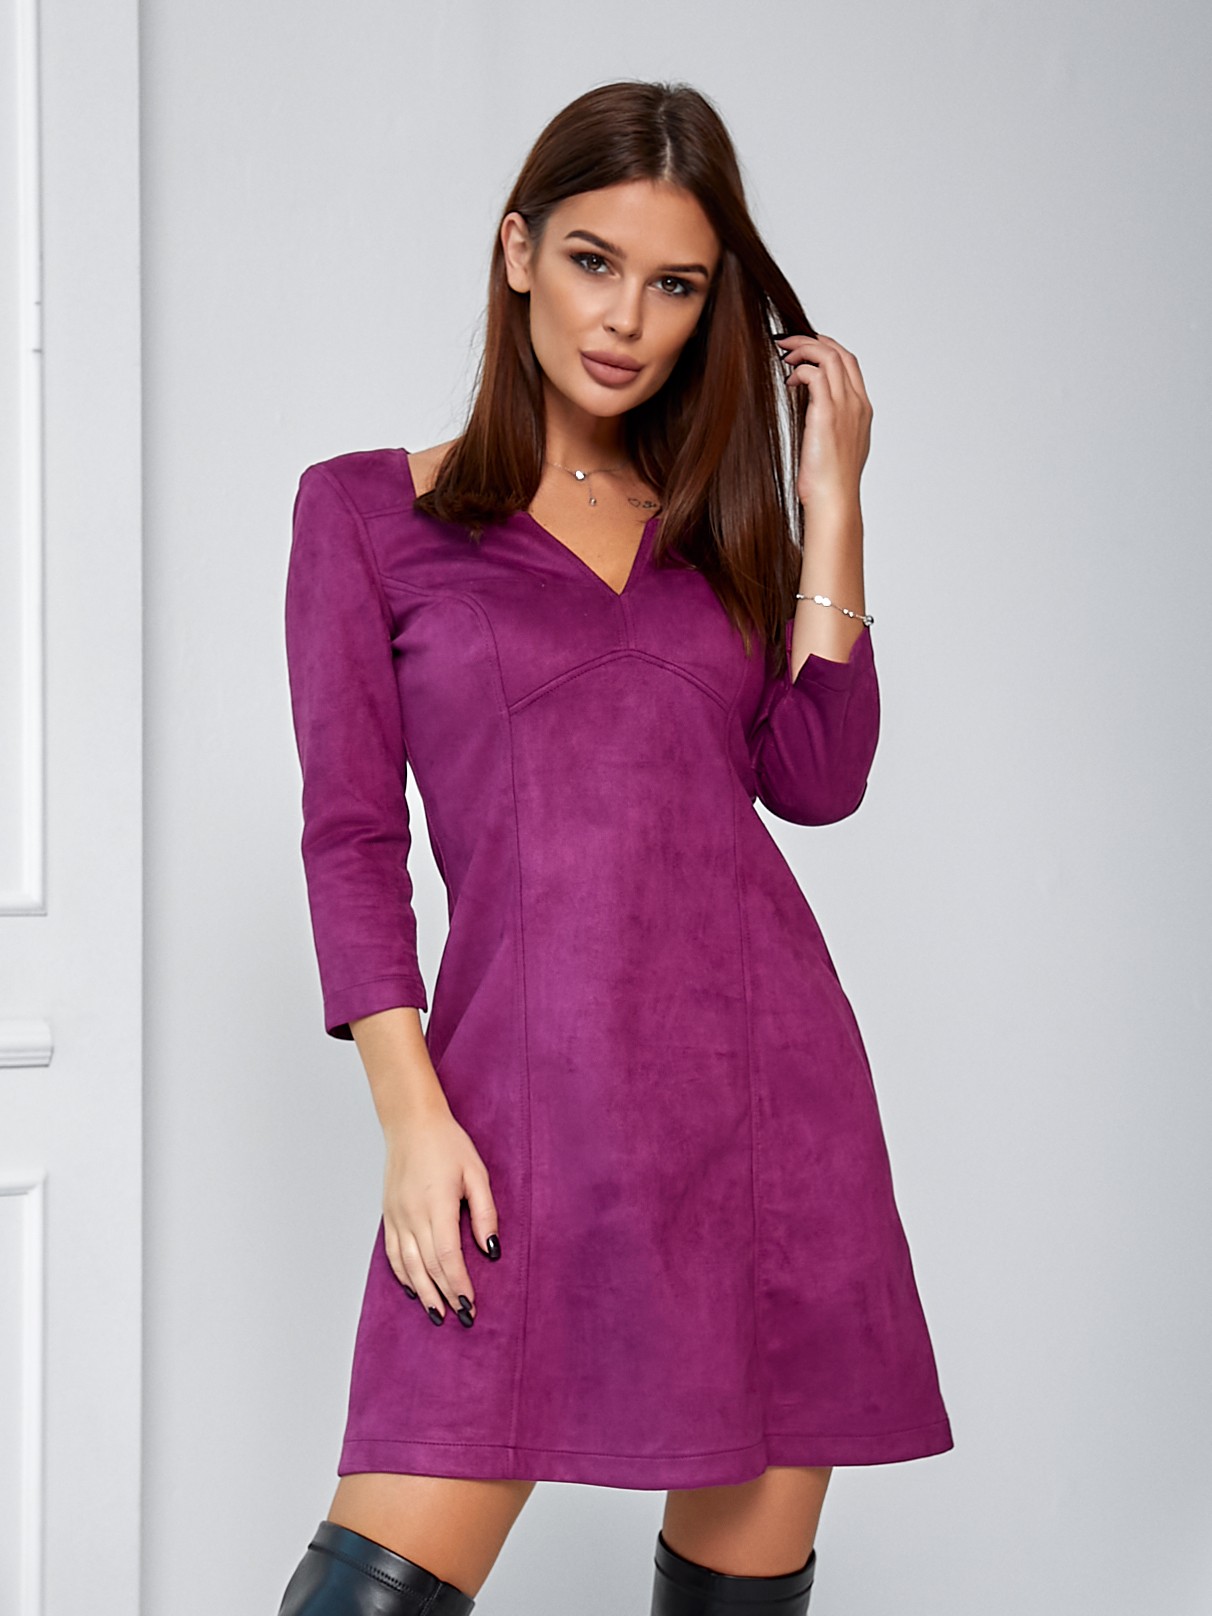 Женское платье короткое замш фиолет 02732